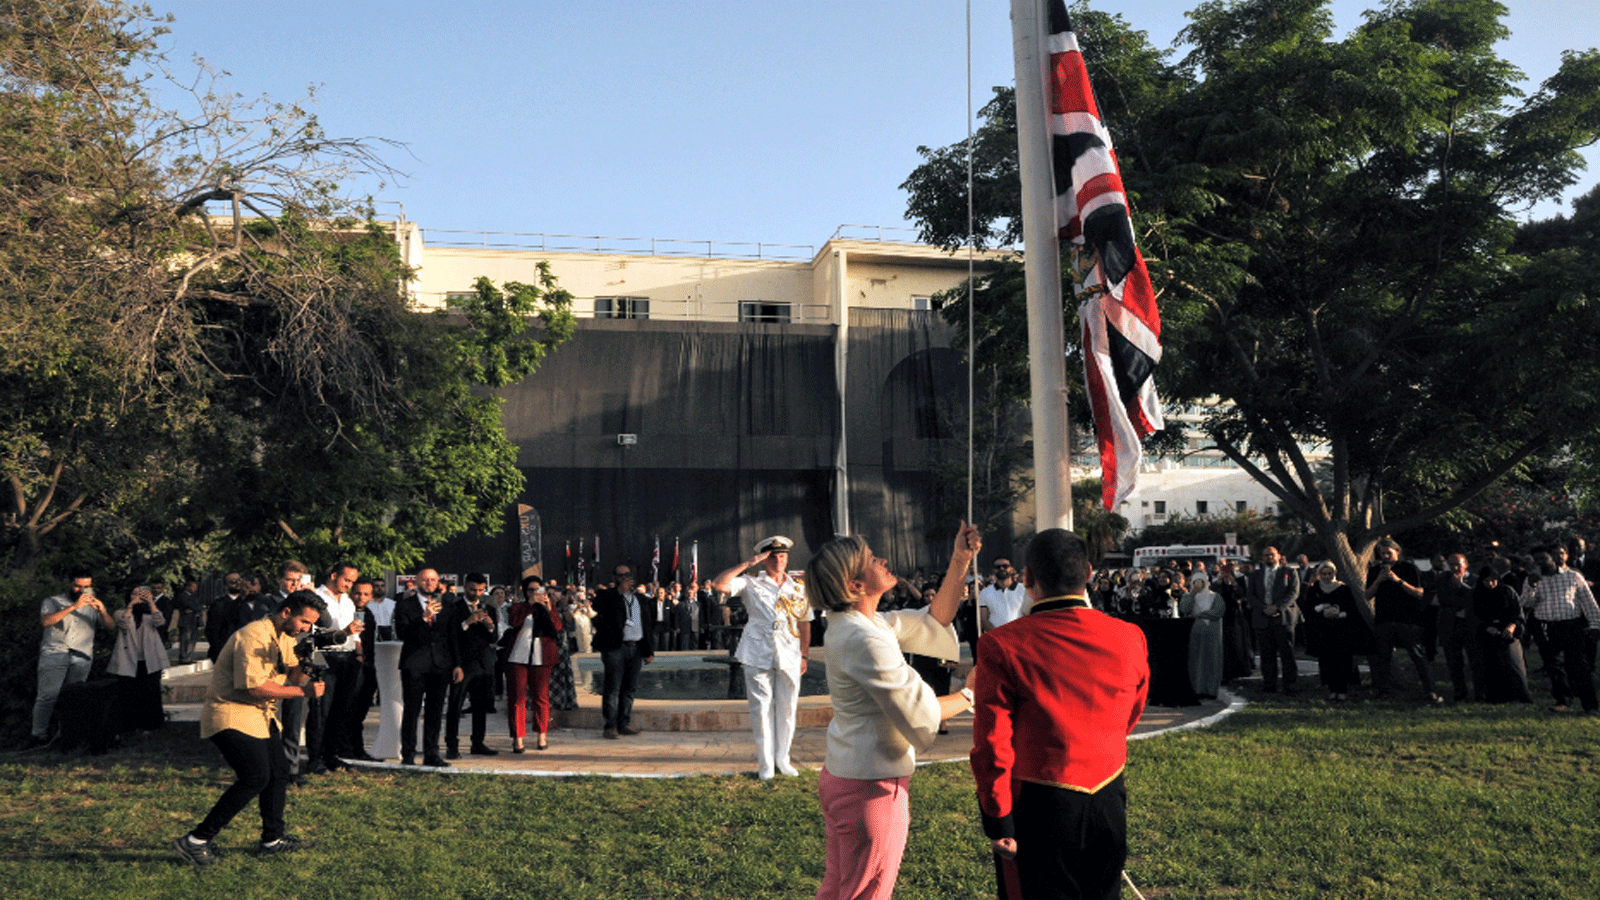 السفيرة البريطانية ترفع علم بلادها على مبنى السفارة في العاصمة الليبية